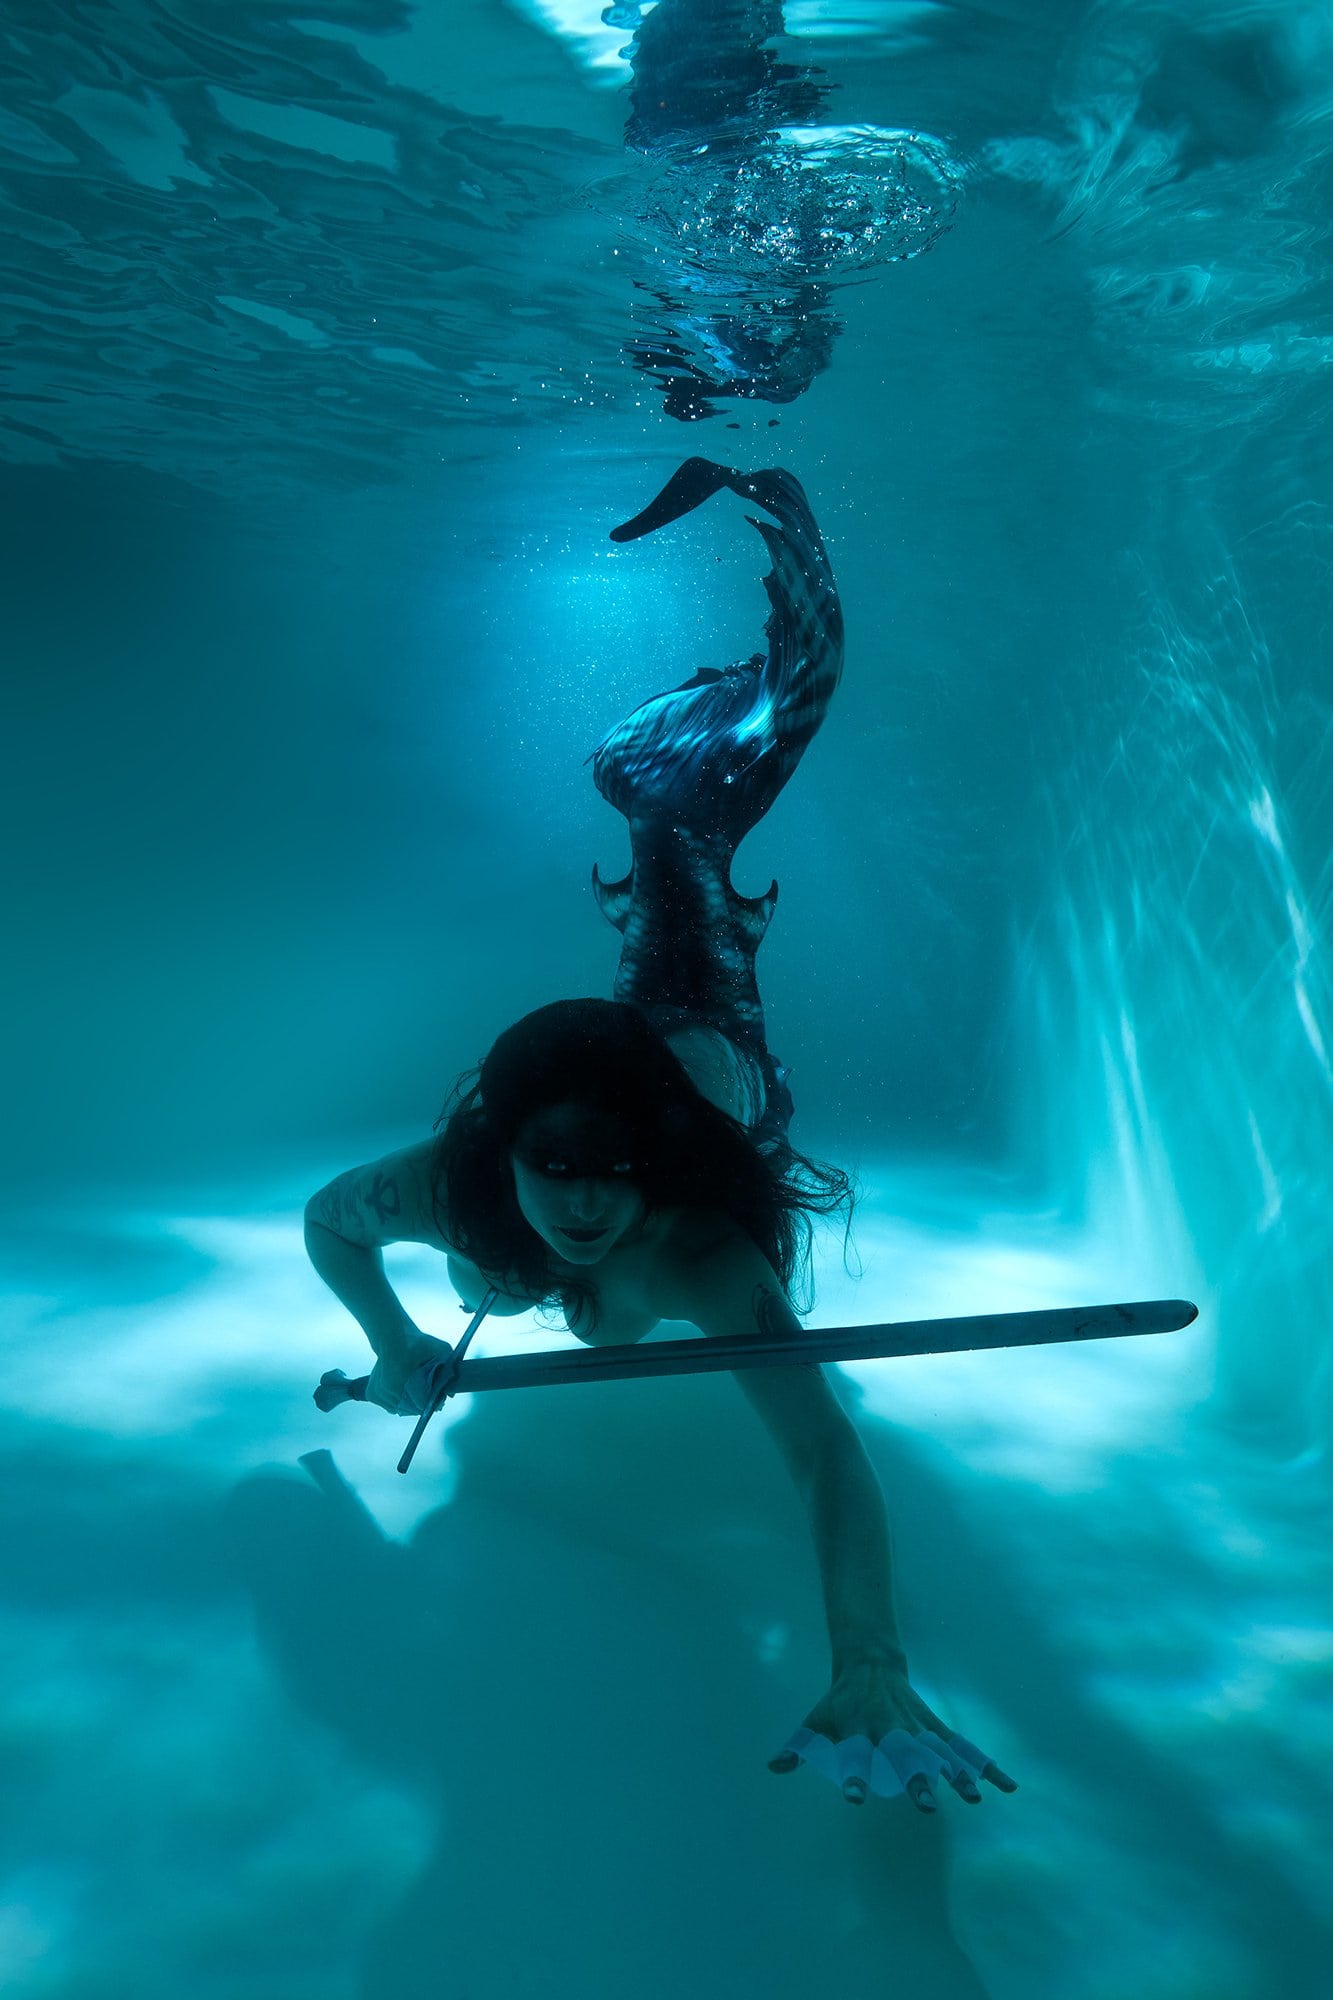 Meerjungfrauen Unterwassershootings Stern Photography FineArt Fotostudio Weimar